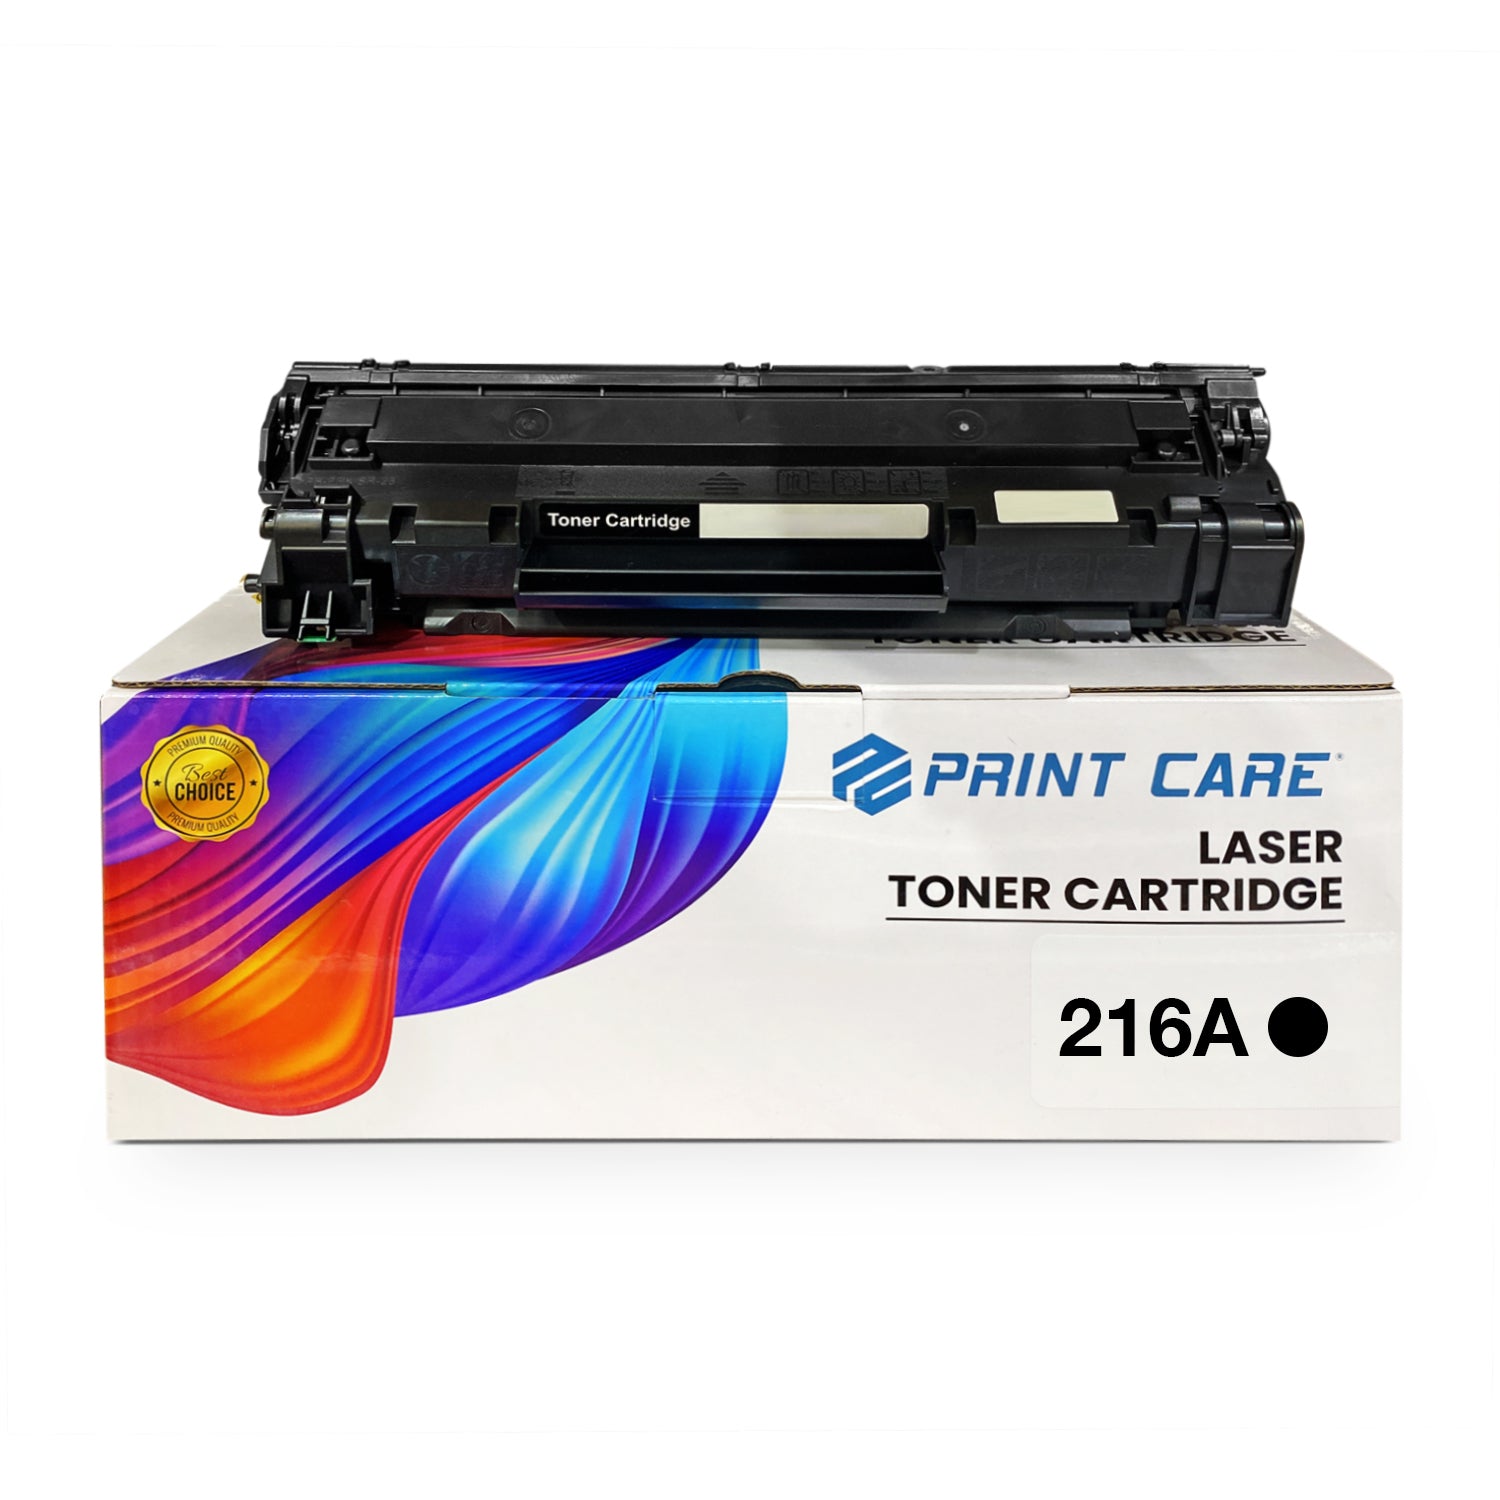 Print Care 216A Black Color – 1050 Pages / Black Color / Toner Cartridge – (W2410A)